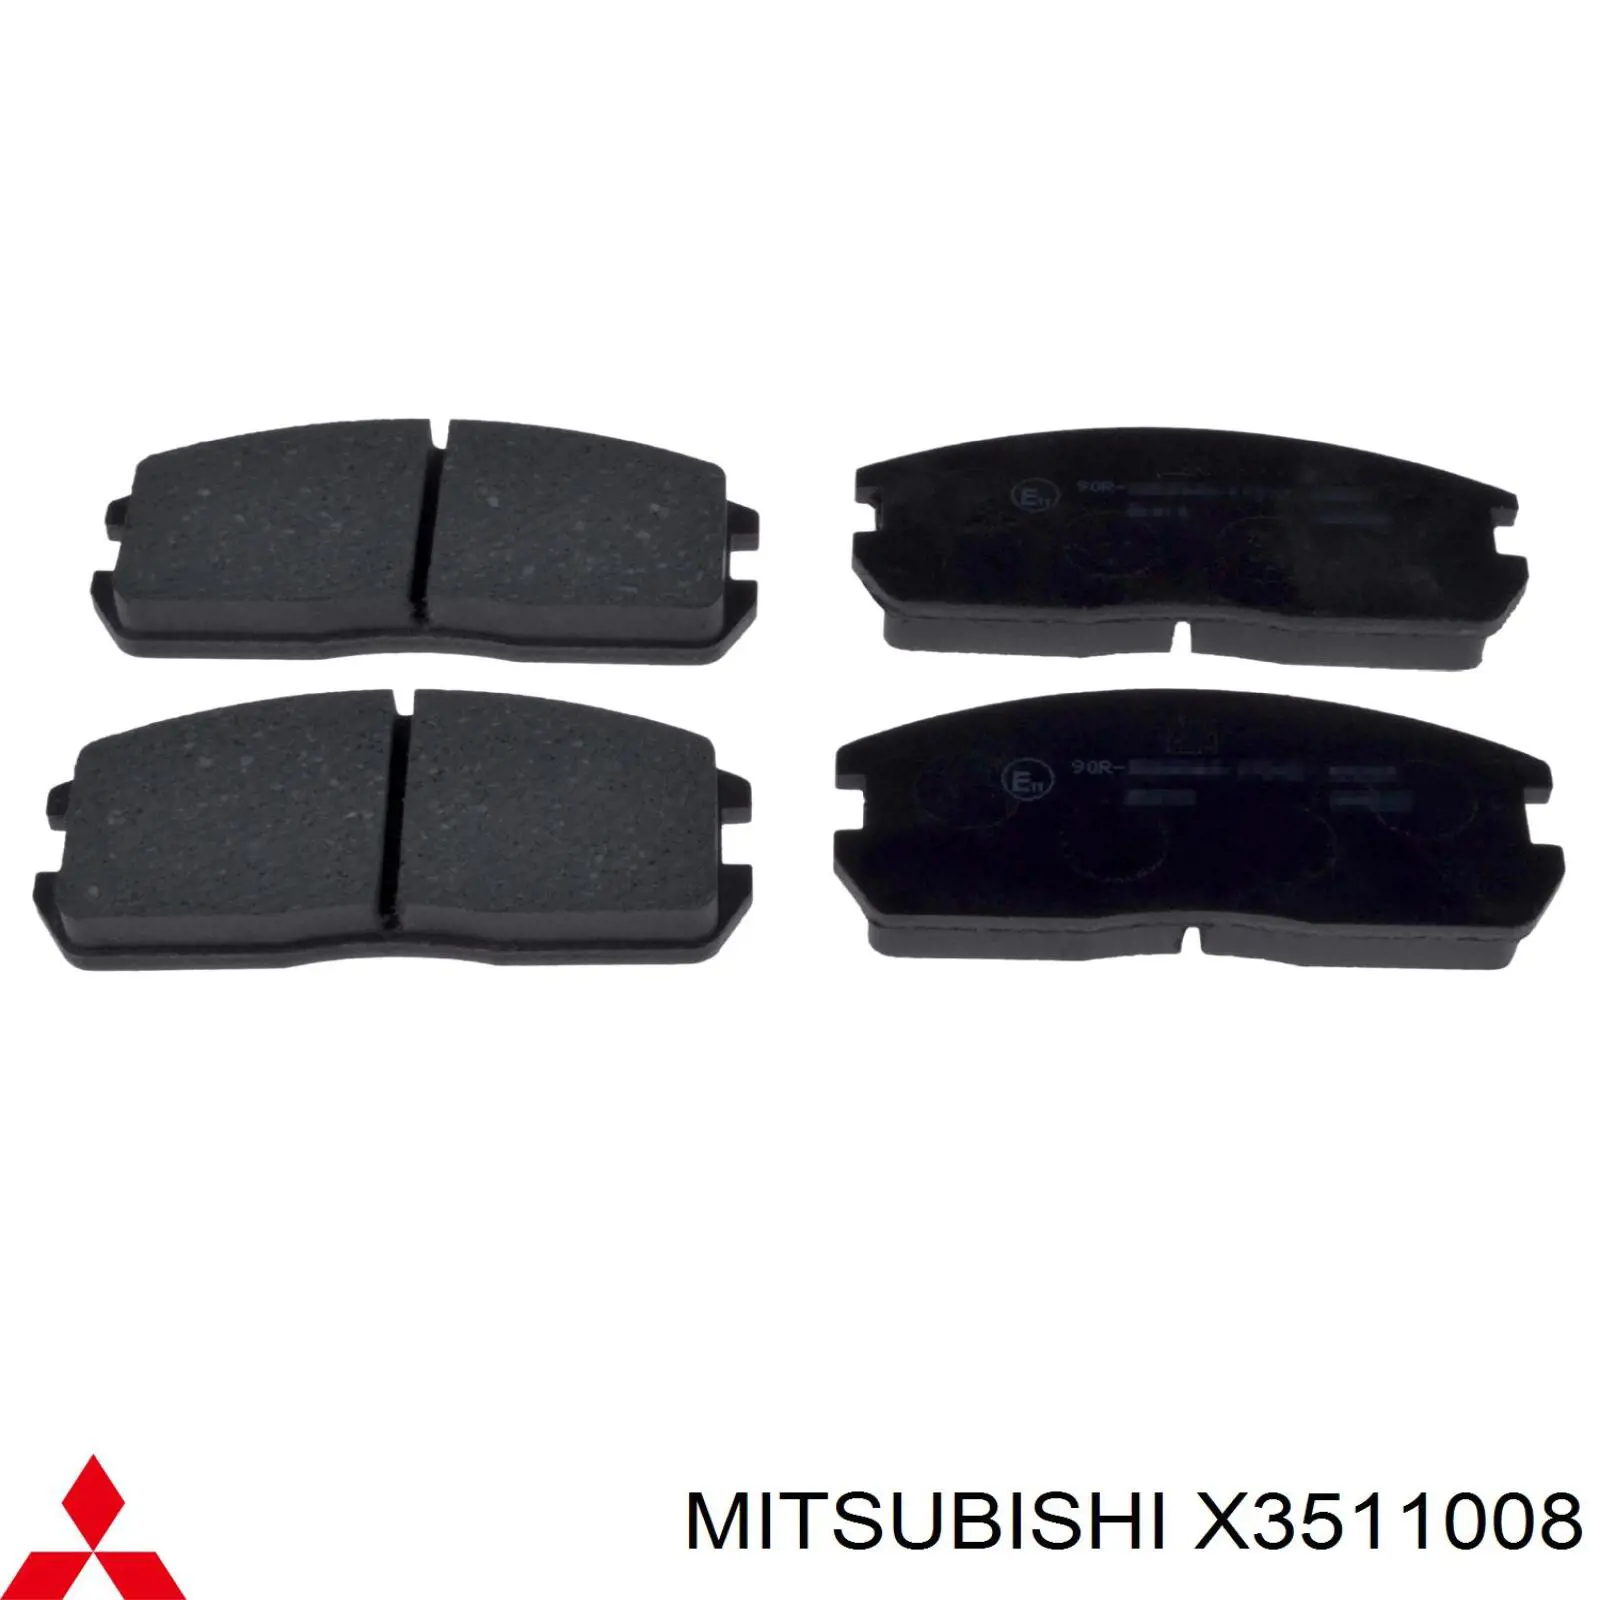 X3511008 Mitsubishi колодки тормозные передние дисковые